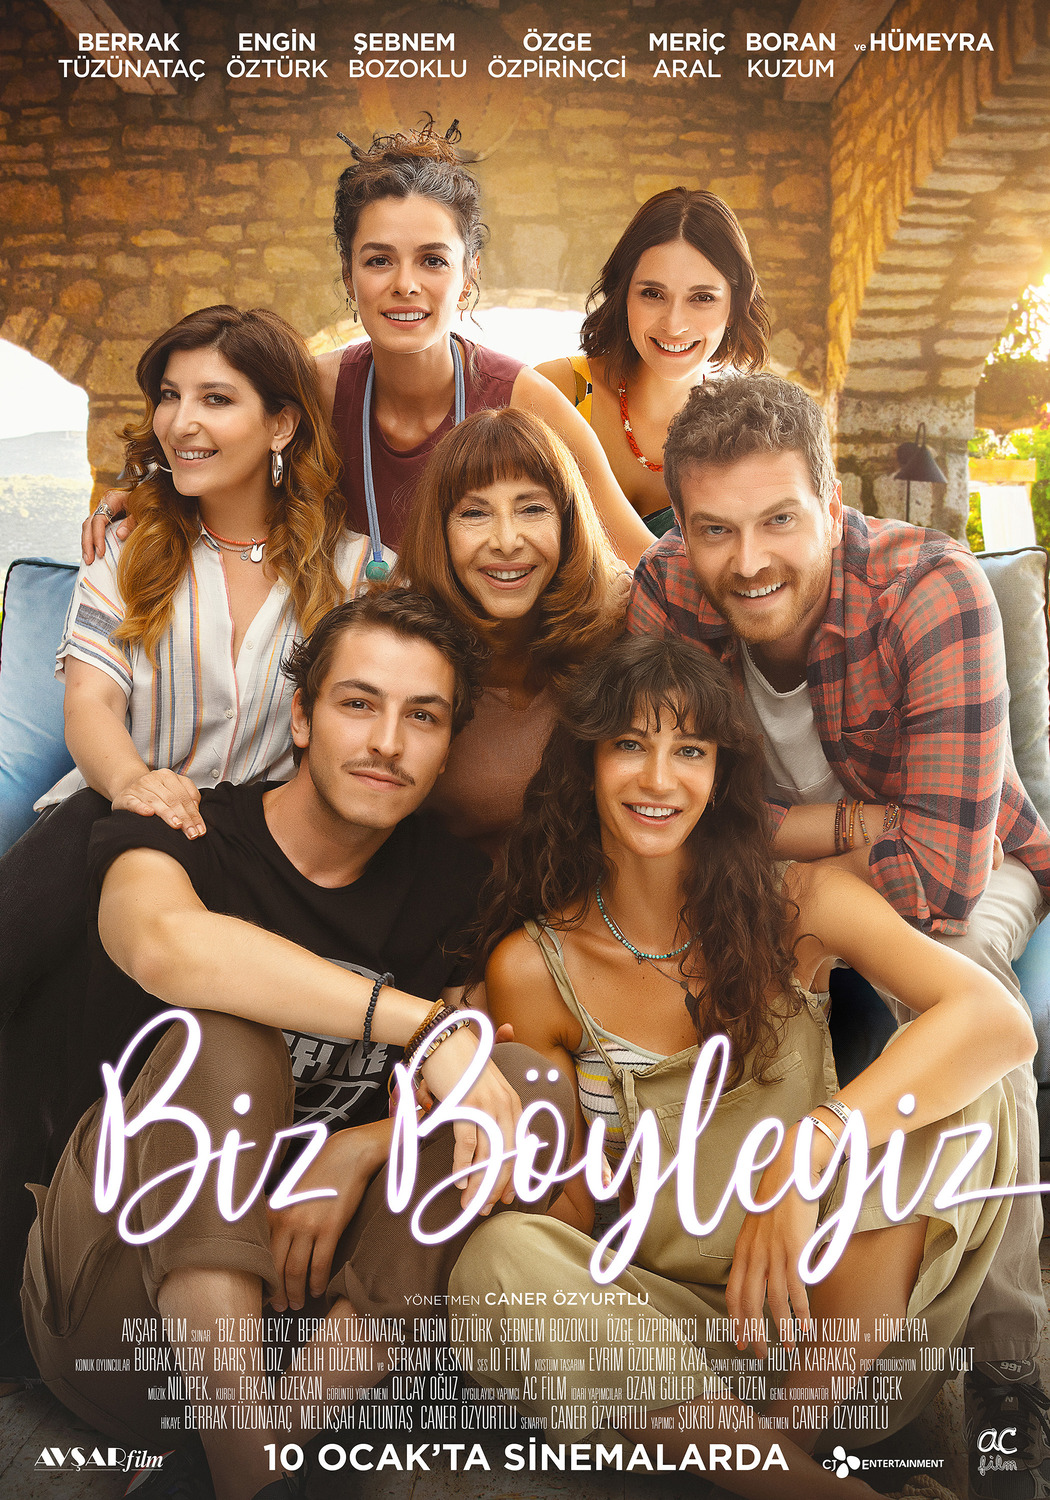 Extra Large Movie Poster Image for Biz Böyleyiz (#2 of 2)